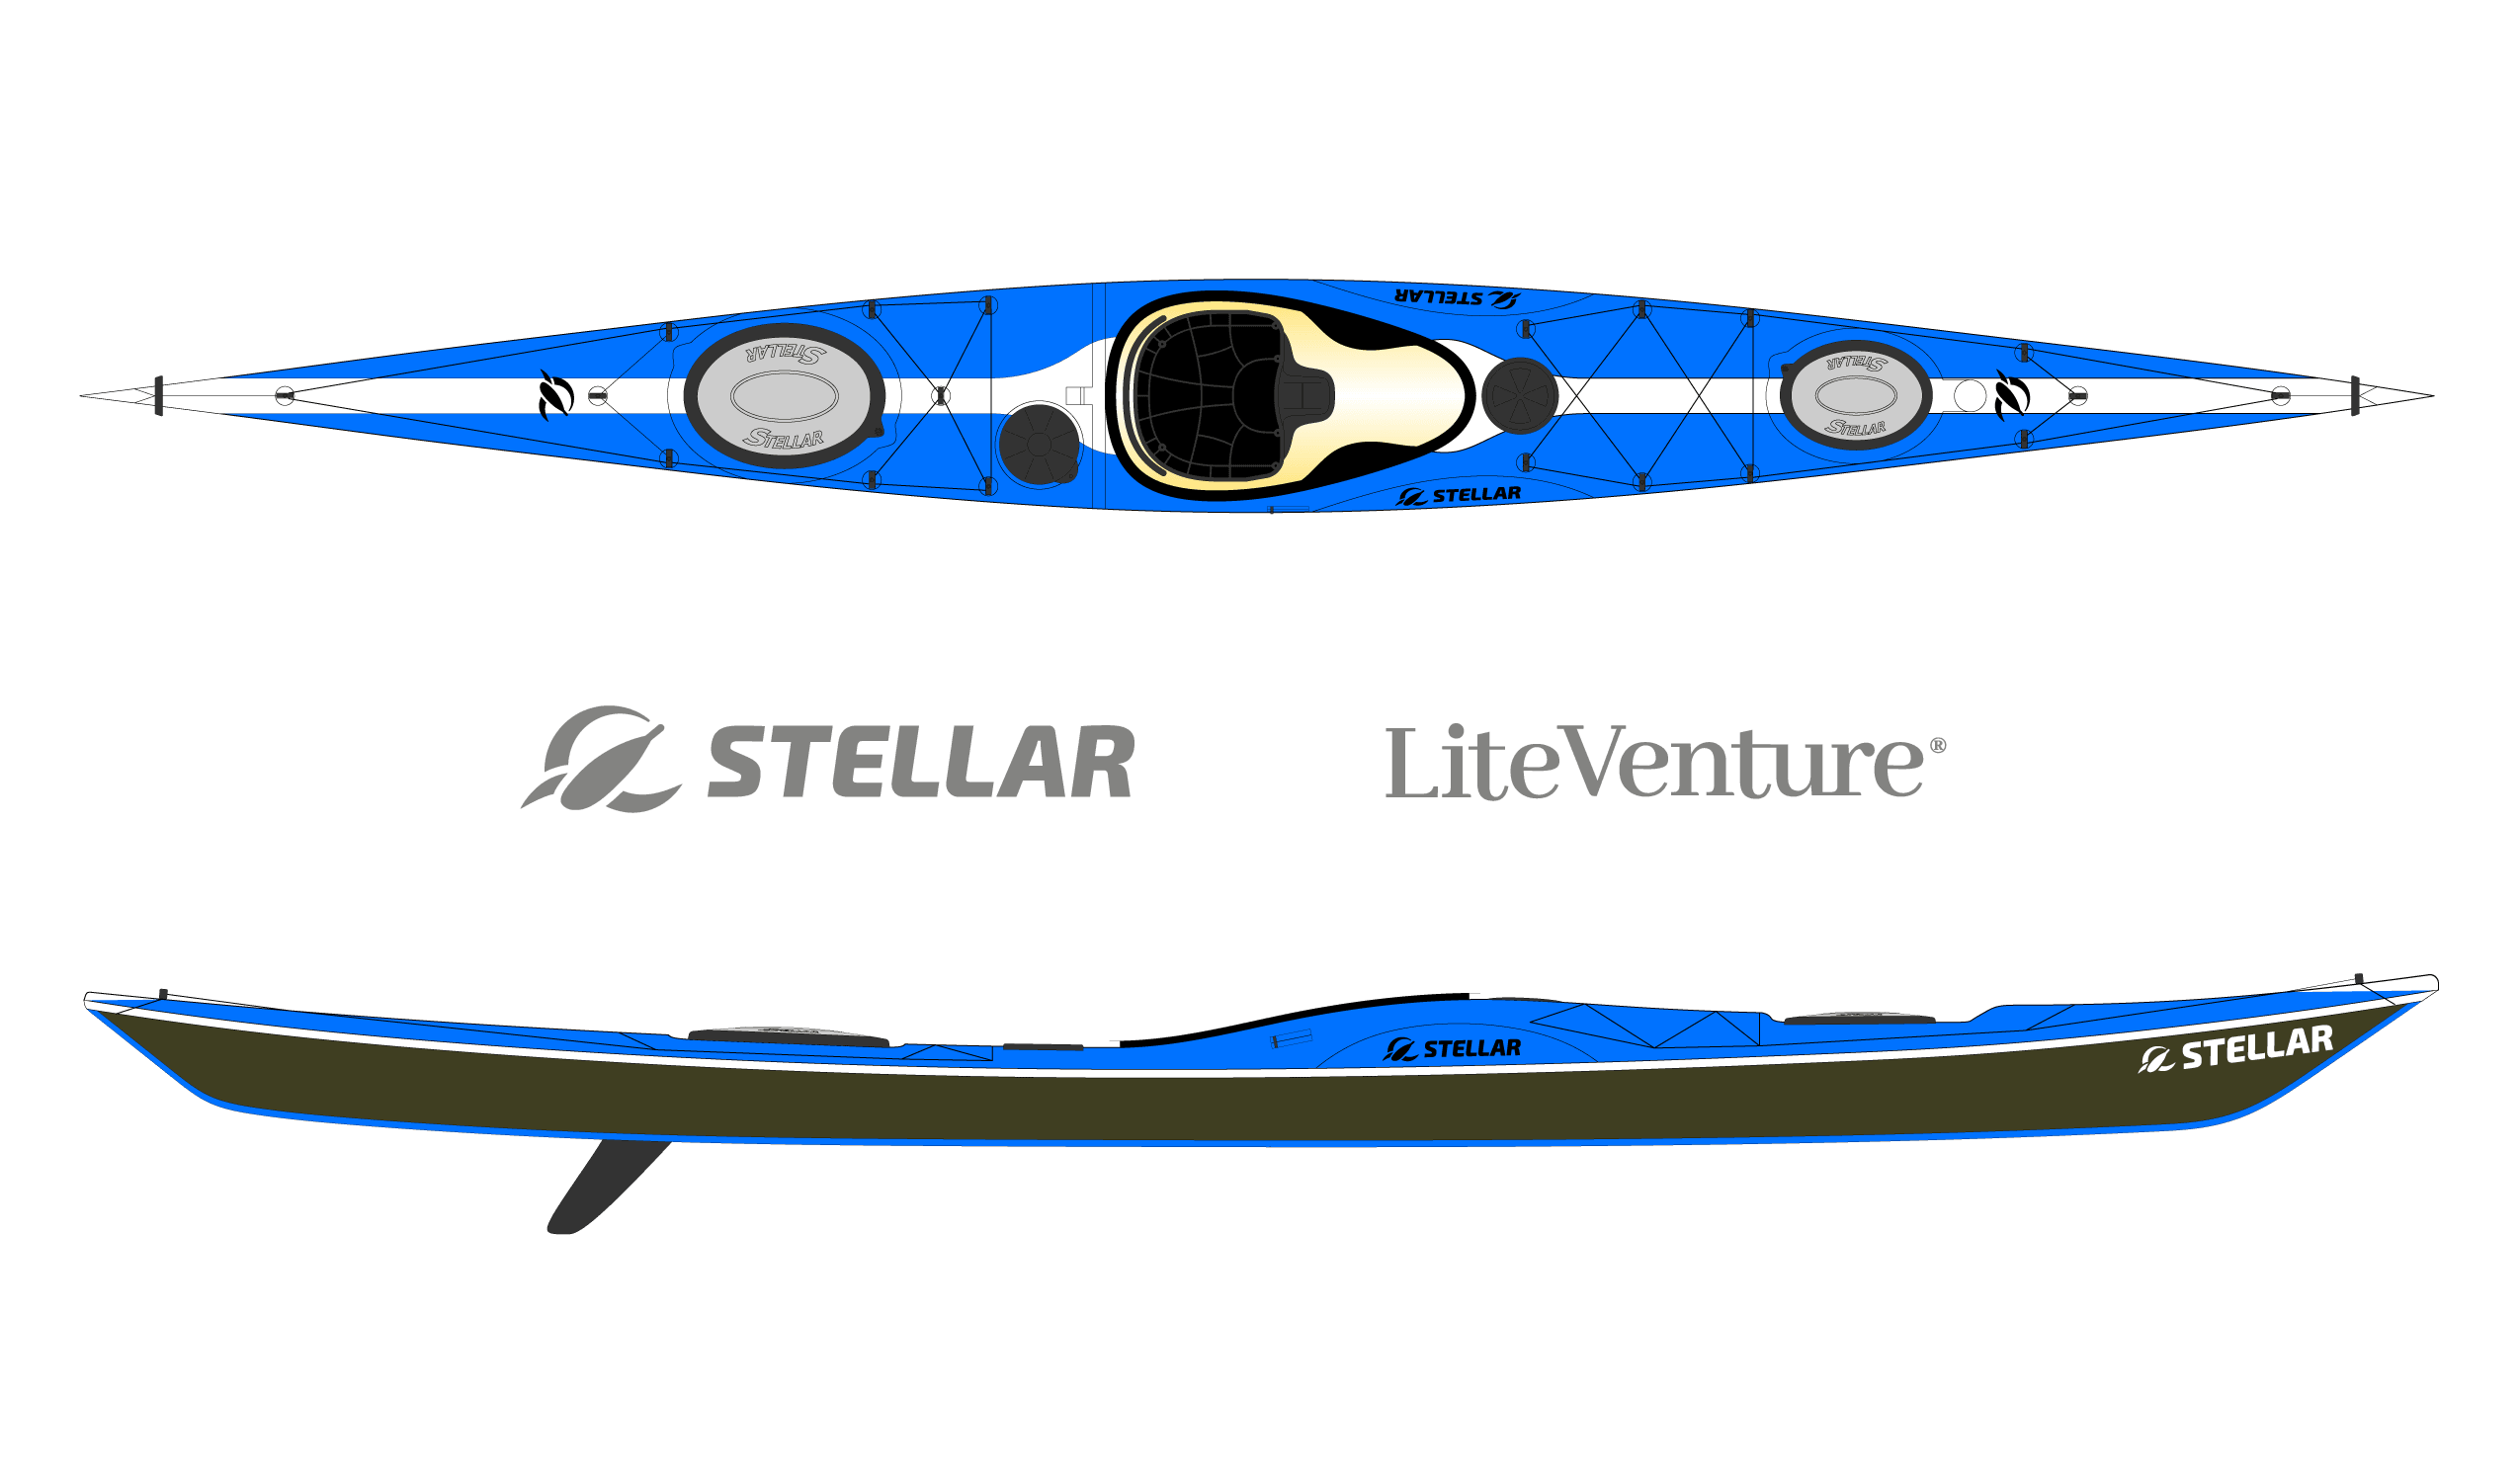 Produktbild von Kajak " SI18 Multisport-blau weiß " der Marke STELLAR Lightweight für 3550.00 €. Erhältlich online bei Lite Venture ( www.liteventure.de )